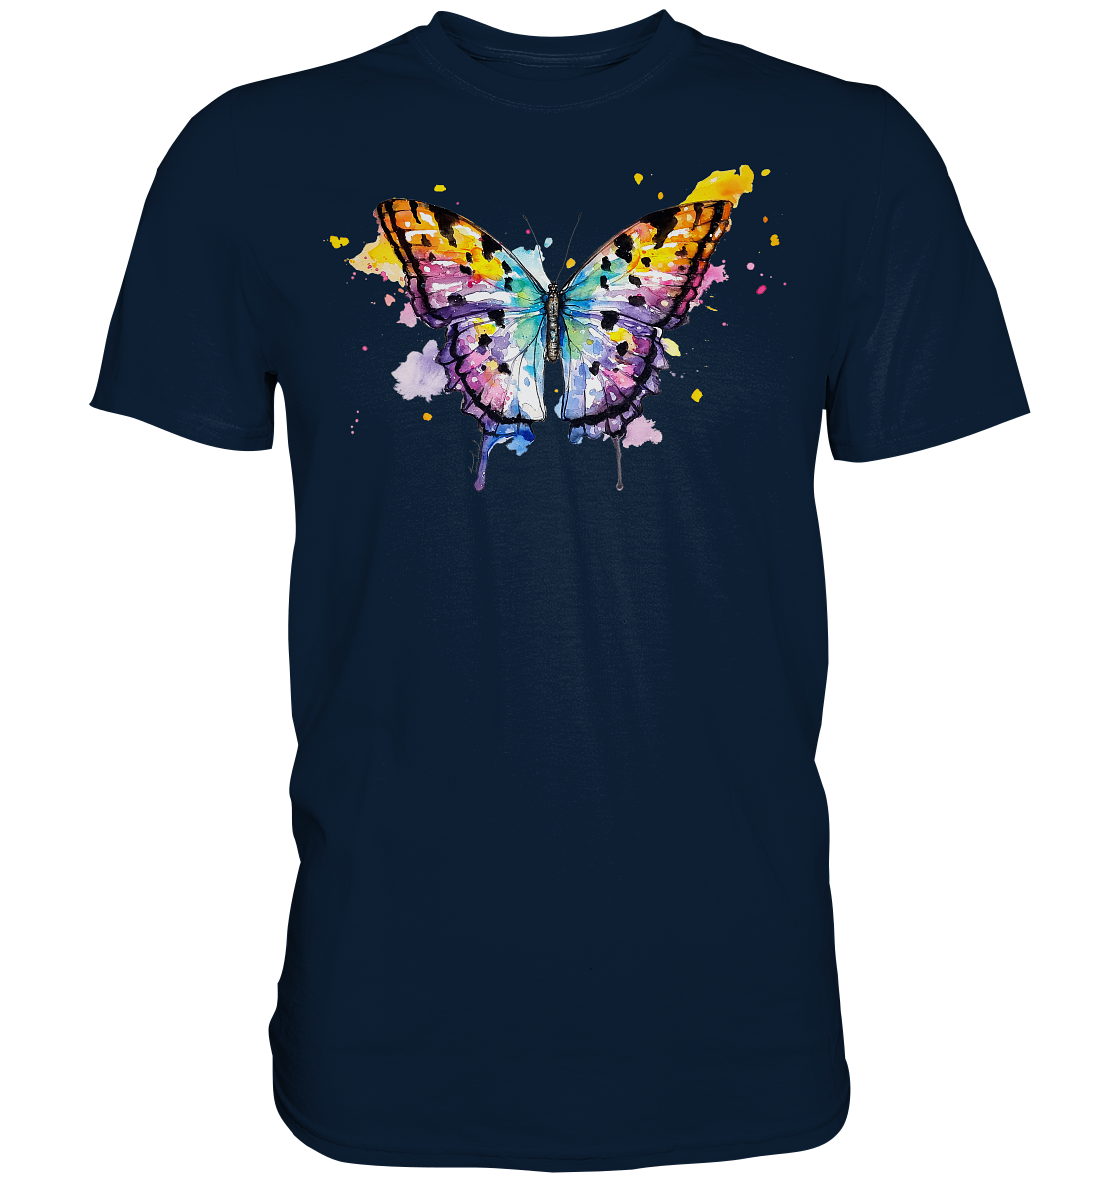 Bunter Schmetterling - Premium Shirt